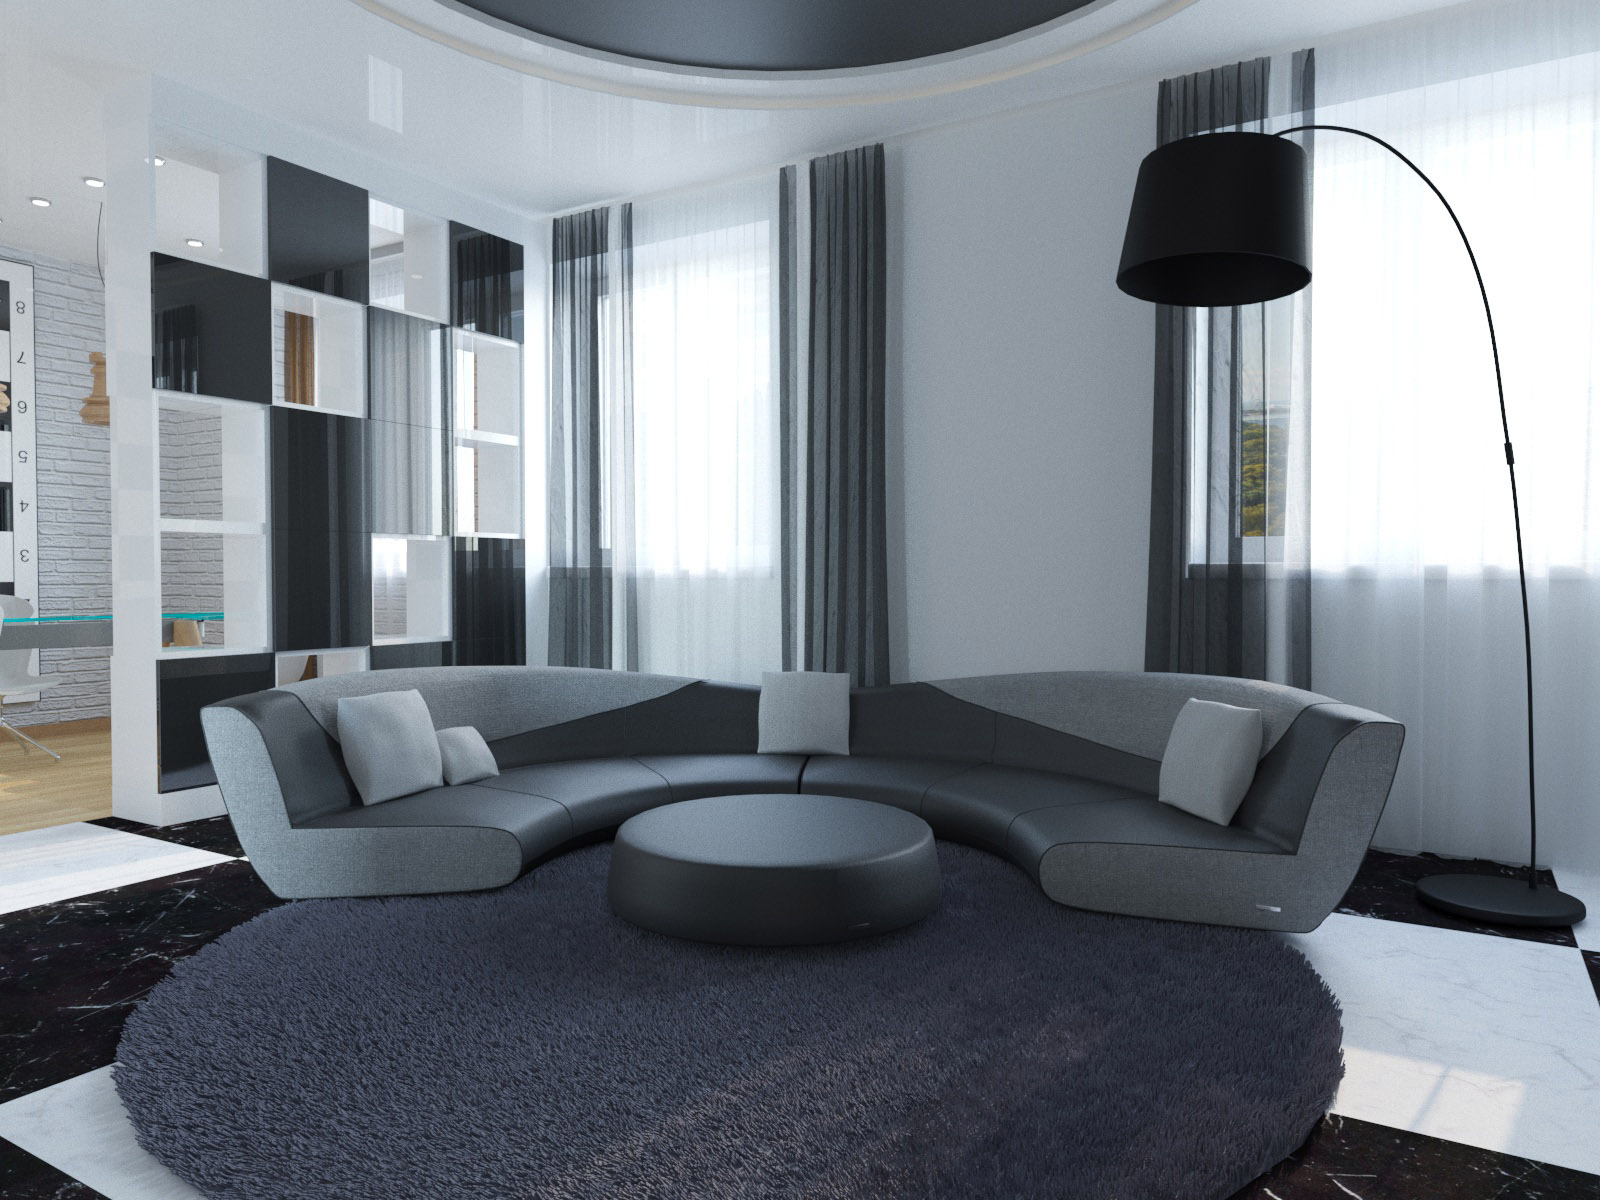 Des chambres design dans l'hôtel. dans 3d max corona render image